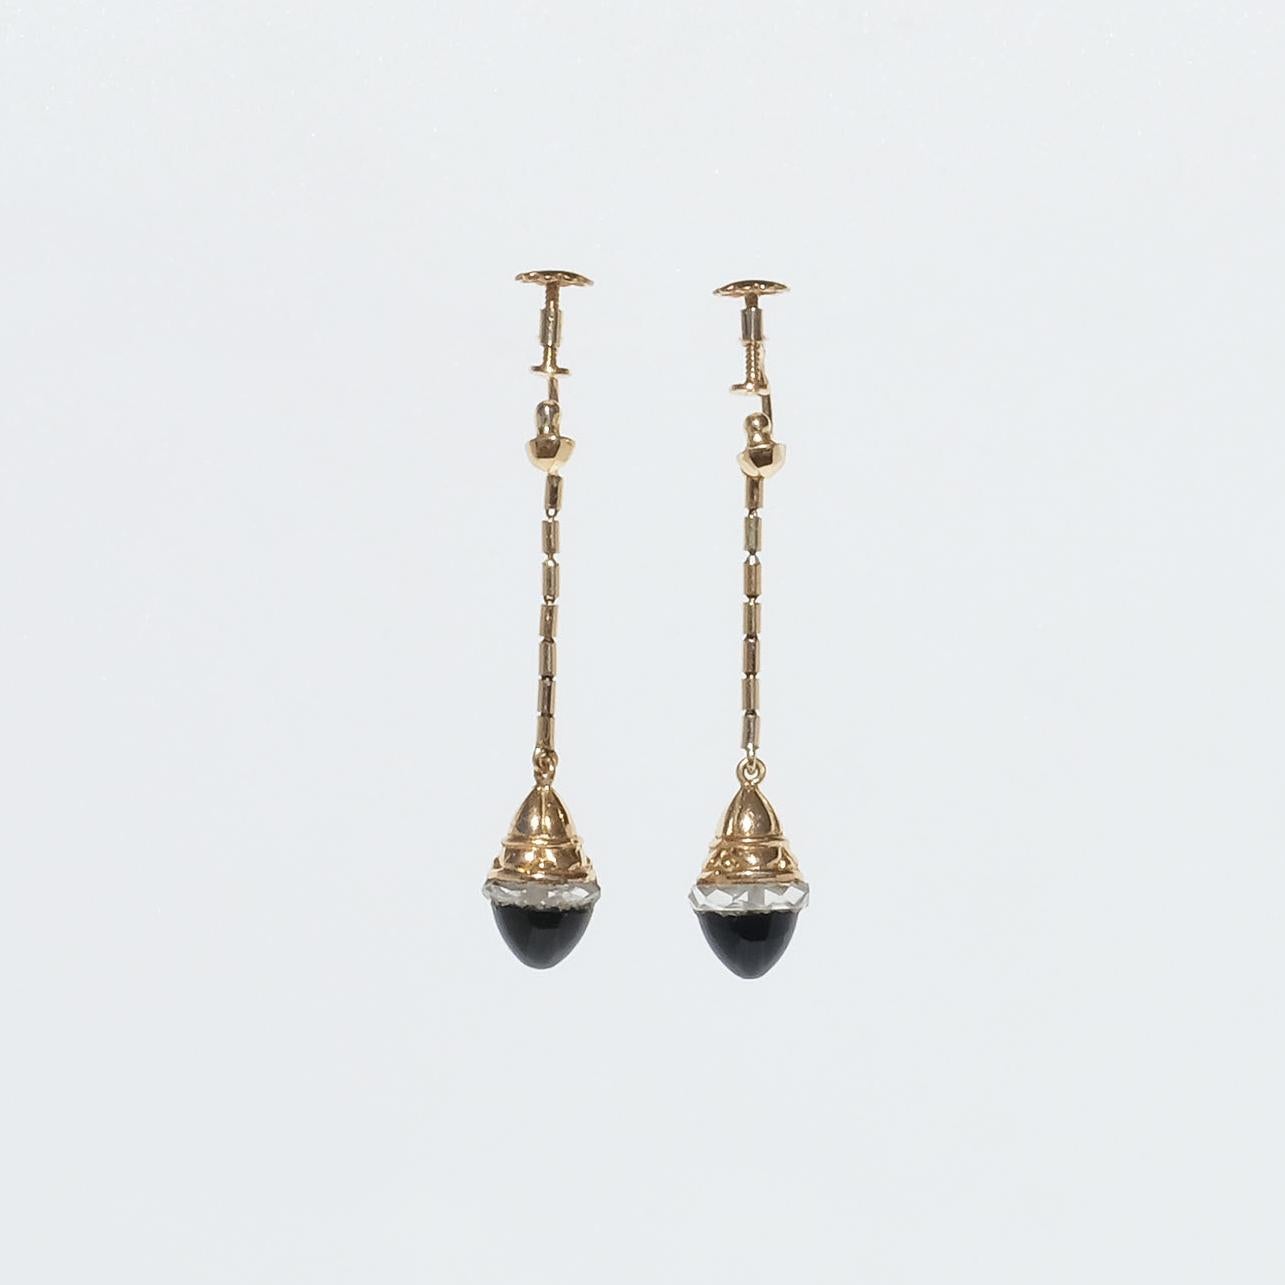 Diese Ohrringe aus 18-karätigem Gold sind mit Onyx-Steinen im Cabochon-Schliff und einem Rand aus geschliffenem Glas verziert. Die Anhänger baumeln wunderschön an einer 20 mm langen goldenen Bambusgliederkette. Um die Ohrringe an Ort und Stelle zu